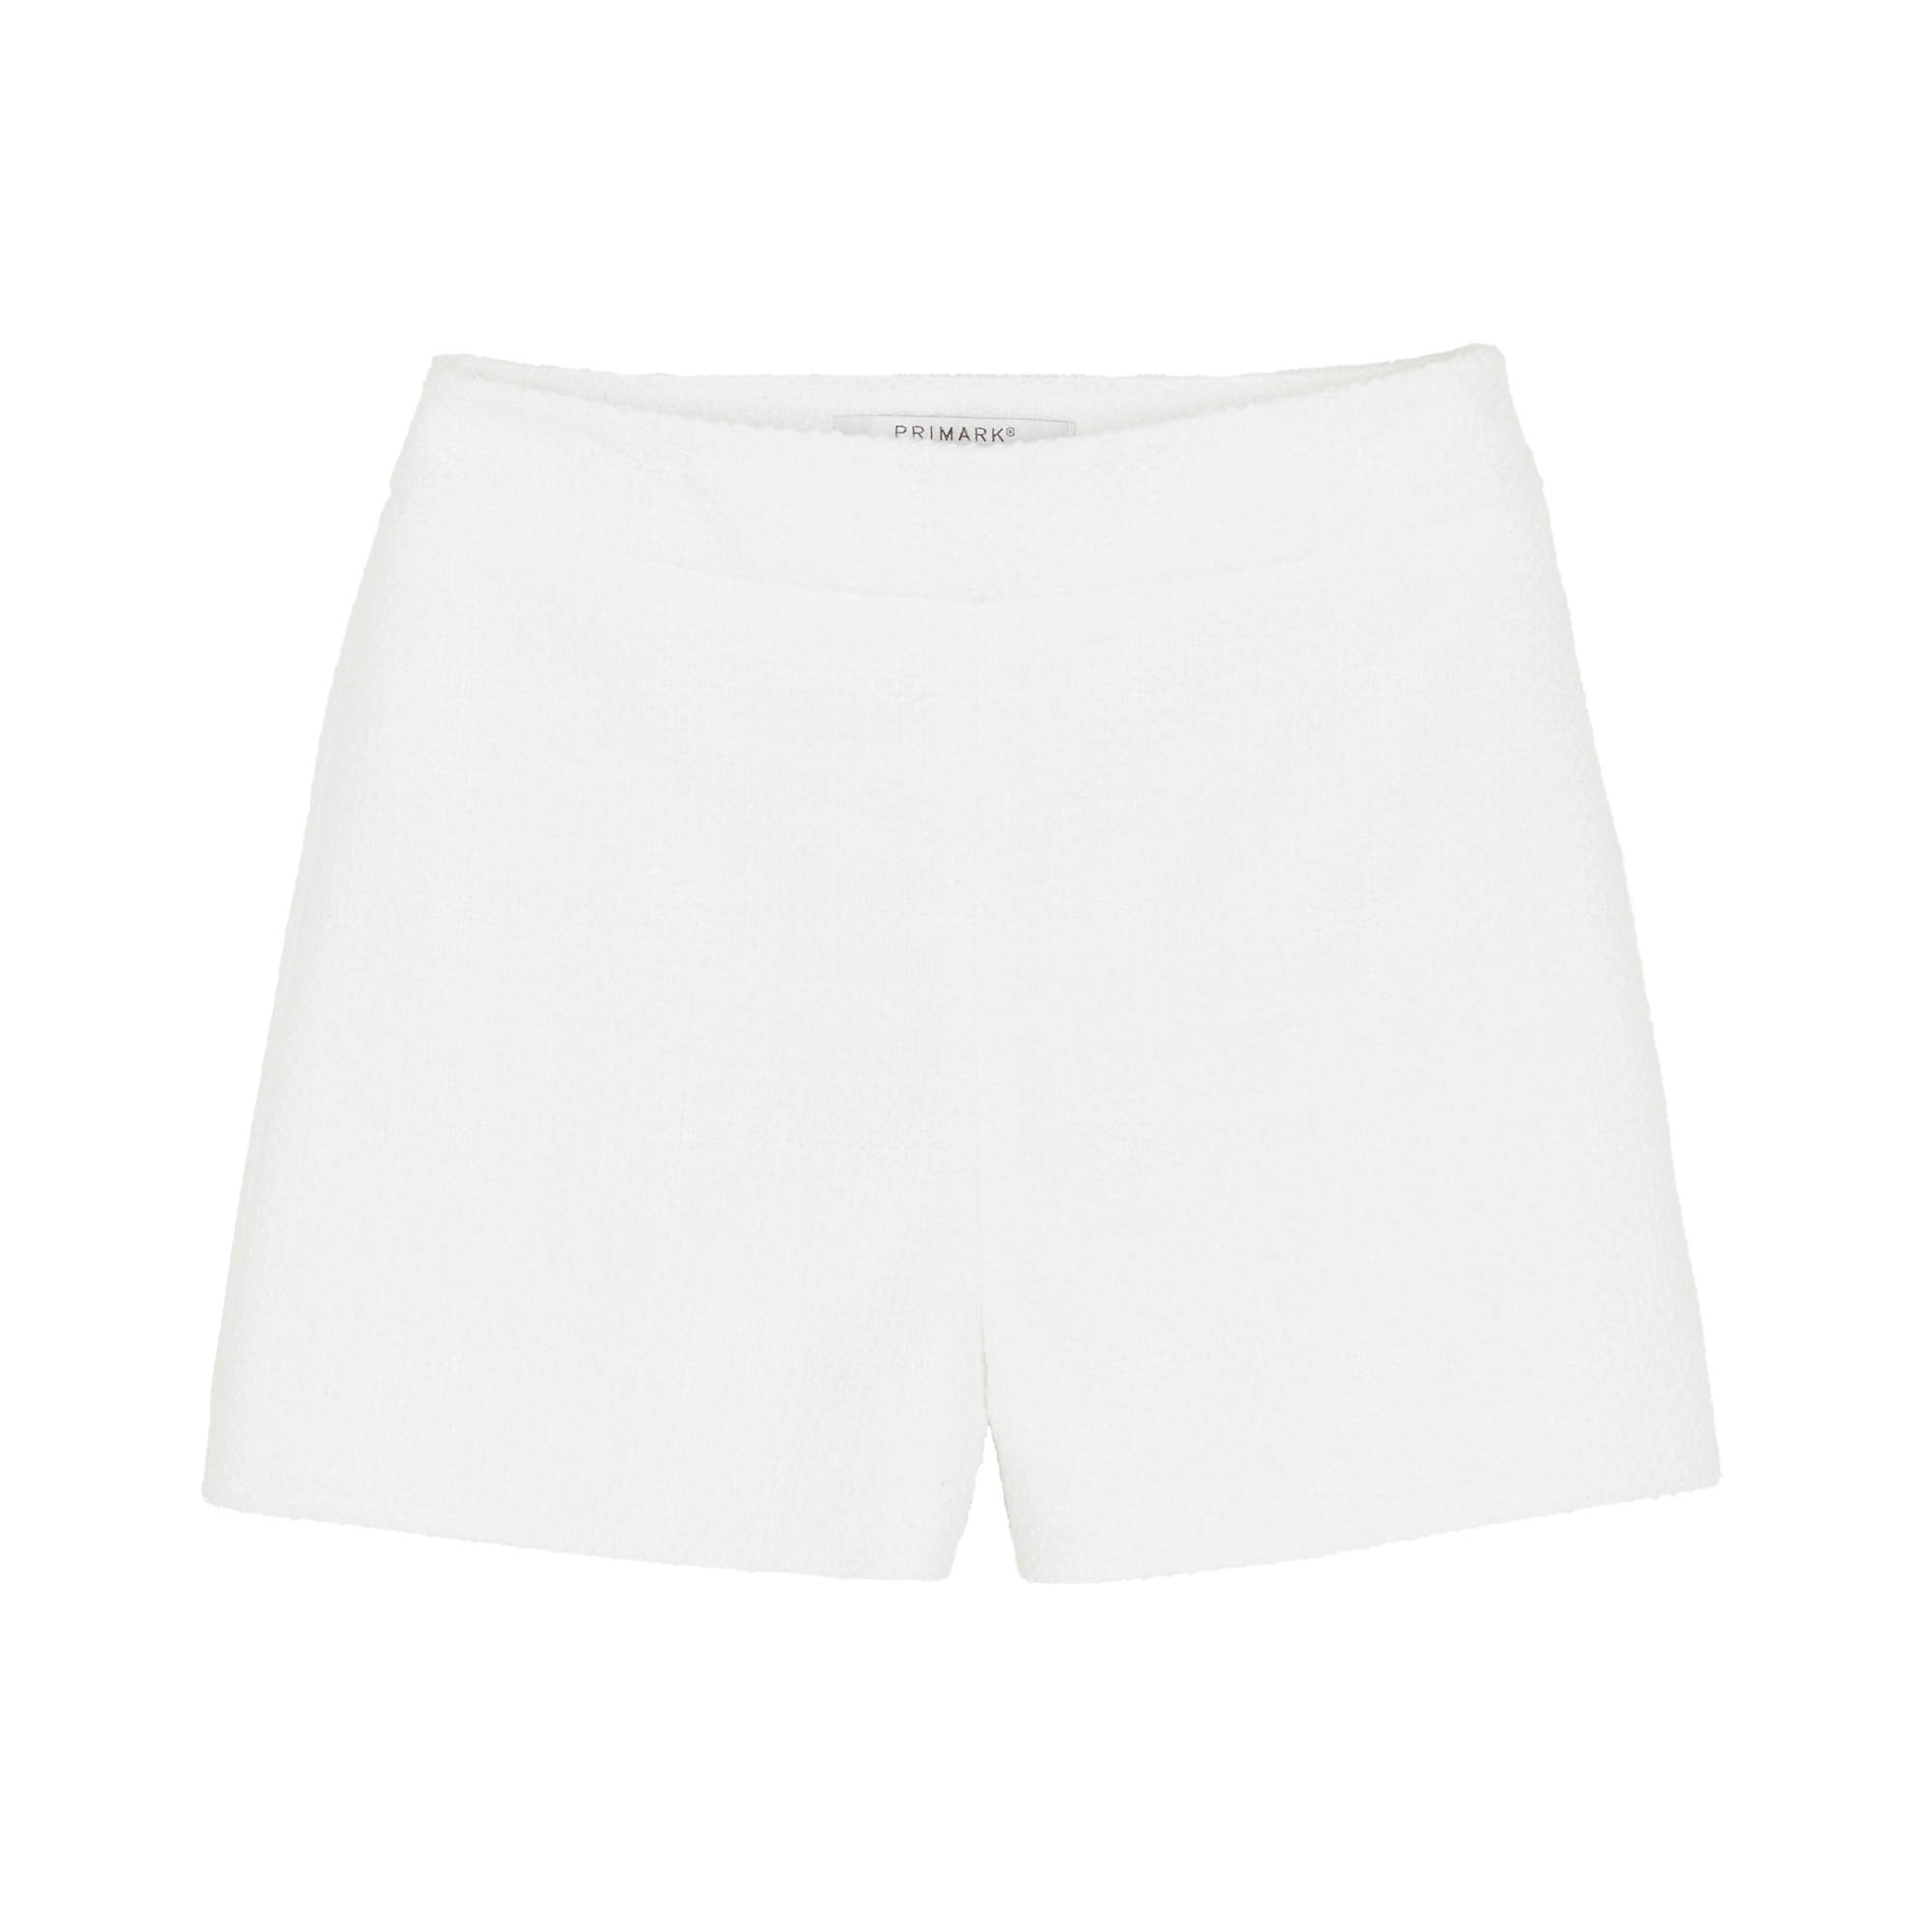 Paula Echevarría x Primark, nuestros favoritos: shorts blancos